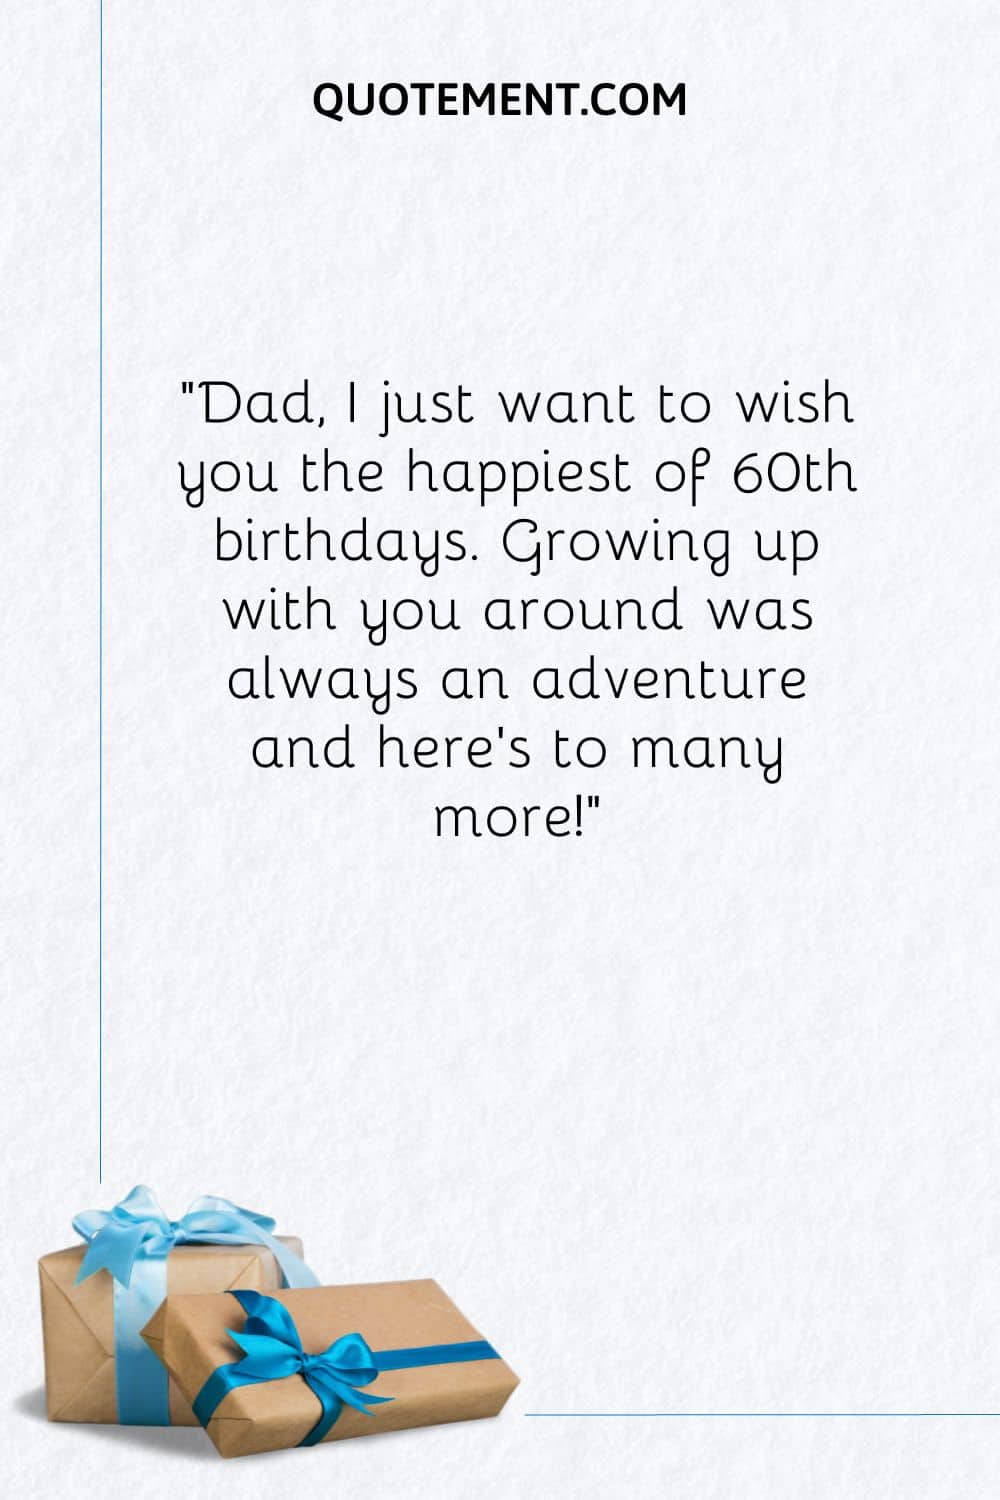 Papá, sólo quiero desearte el más feliz de los 60 cumpleaños...